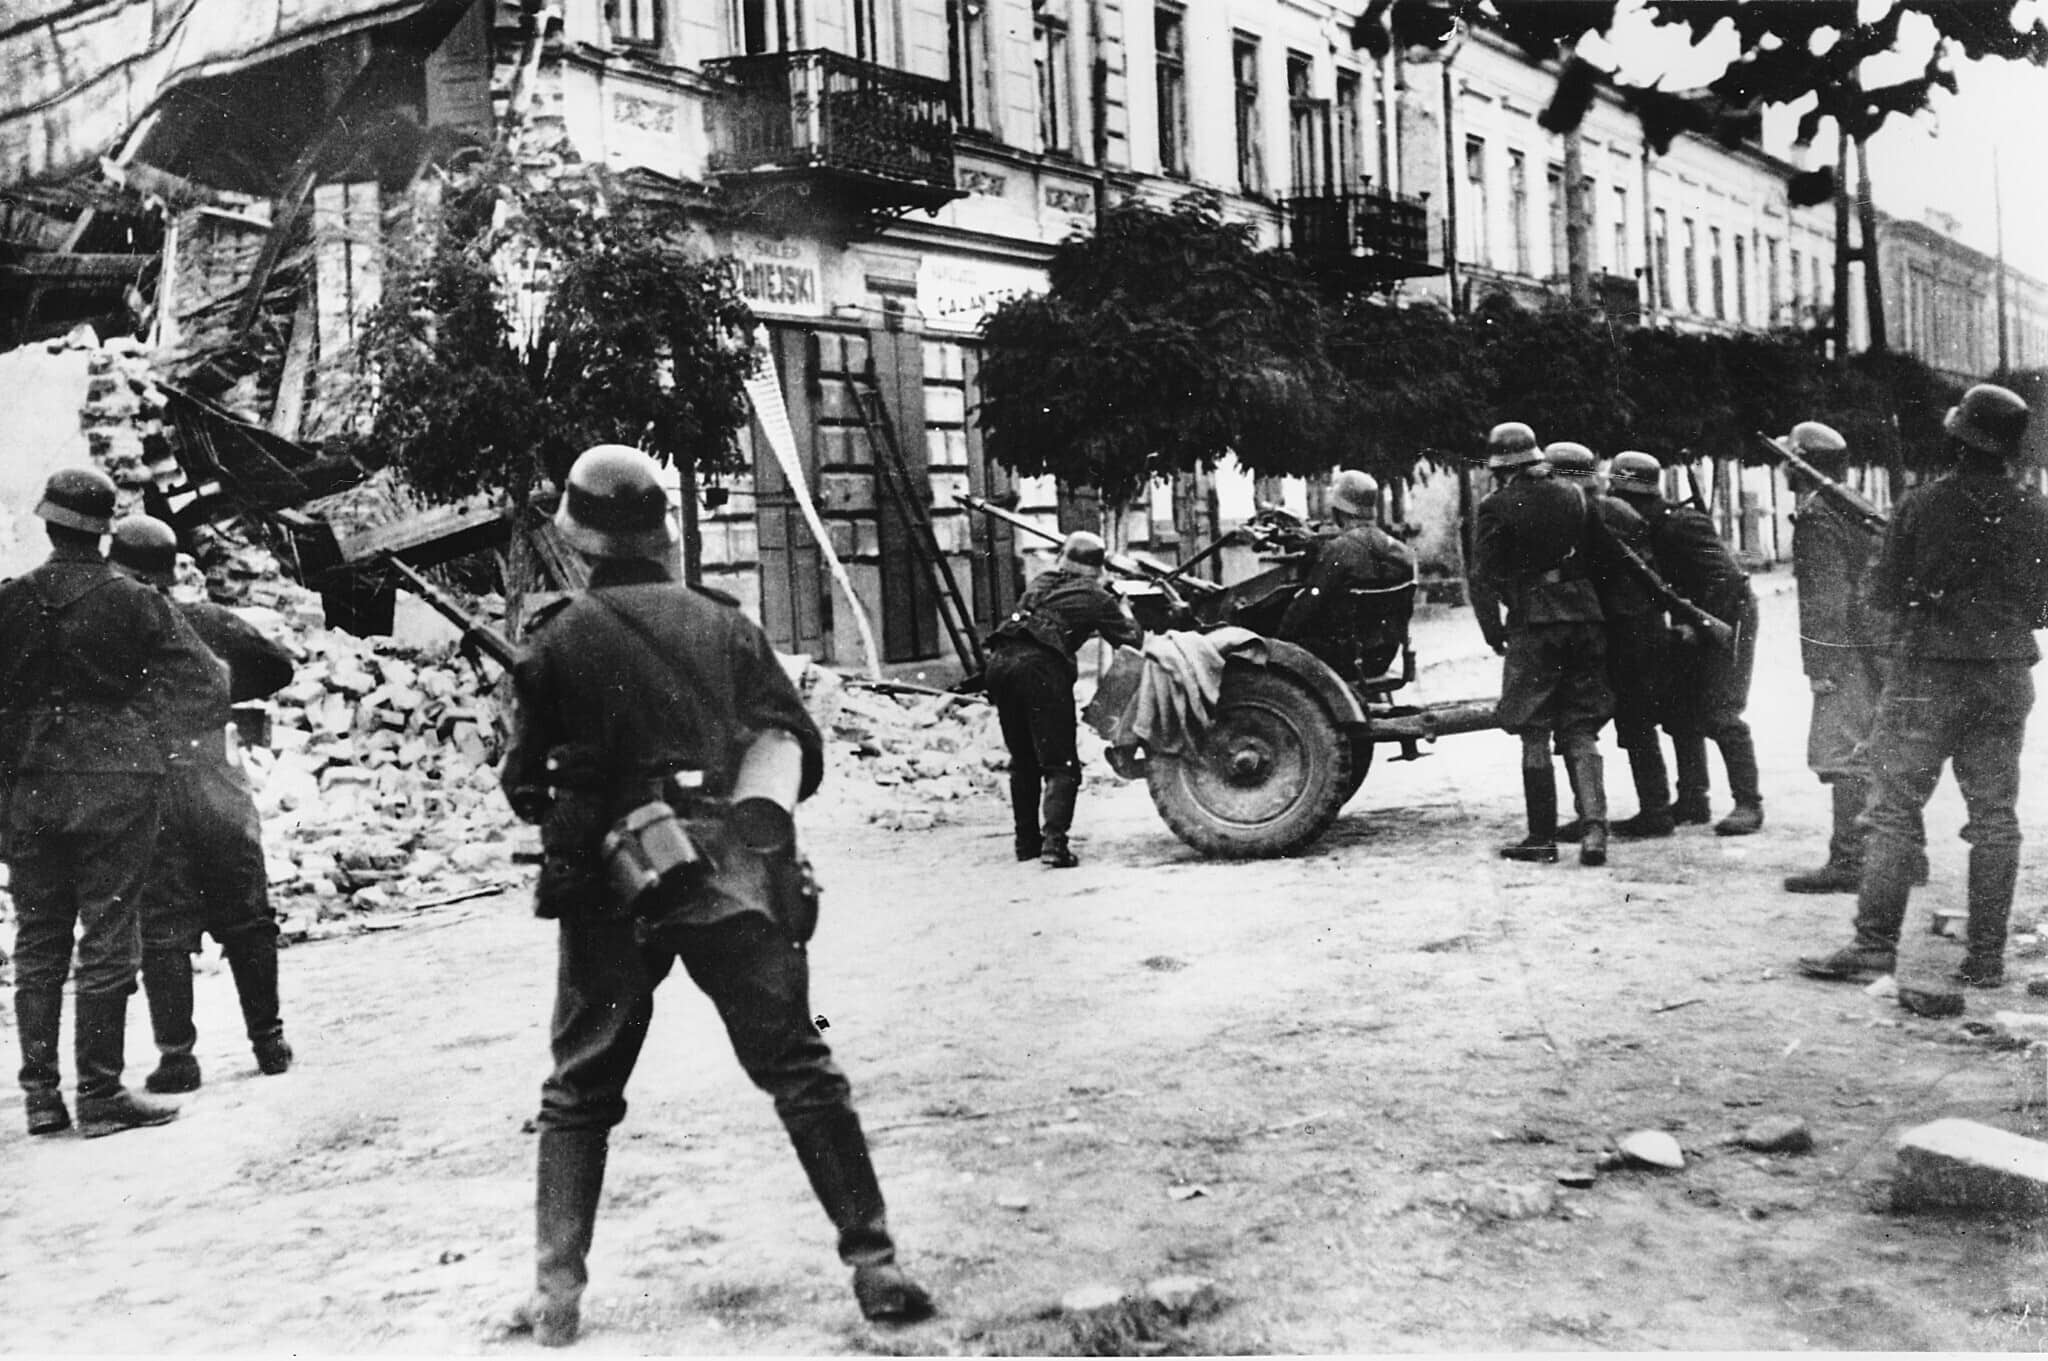 חיילים גרמנים מנסים לסלק צלפים בוורשה במהלך הפלישה הנאצית לפולין בספטמבר 1939 במלחמת העולם השנייה (צילום: AP Photo)